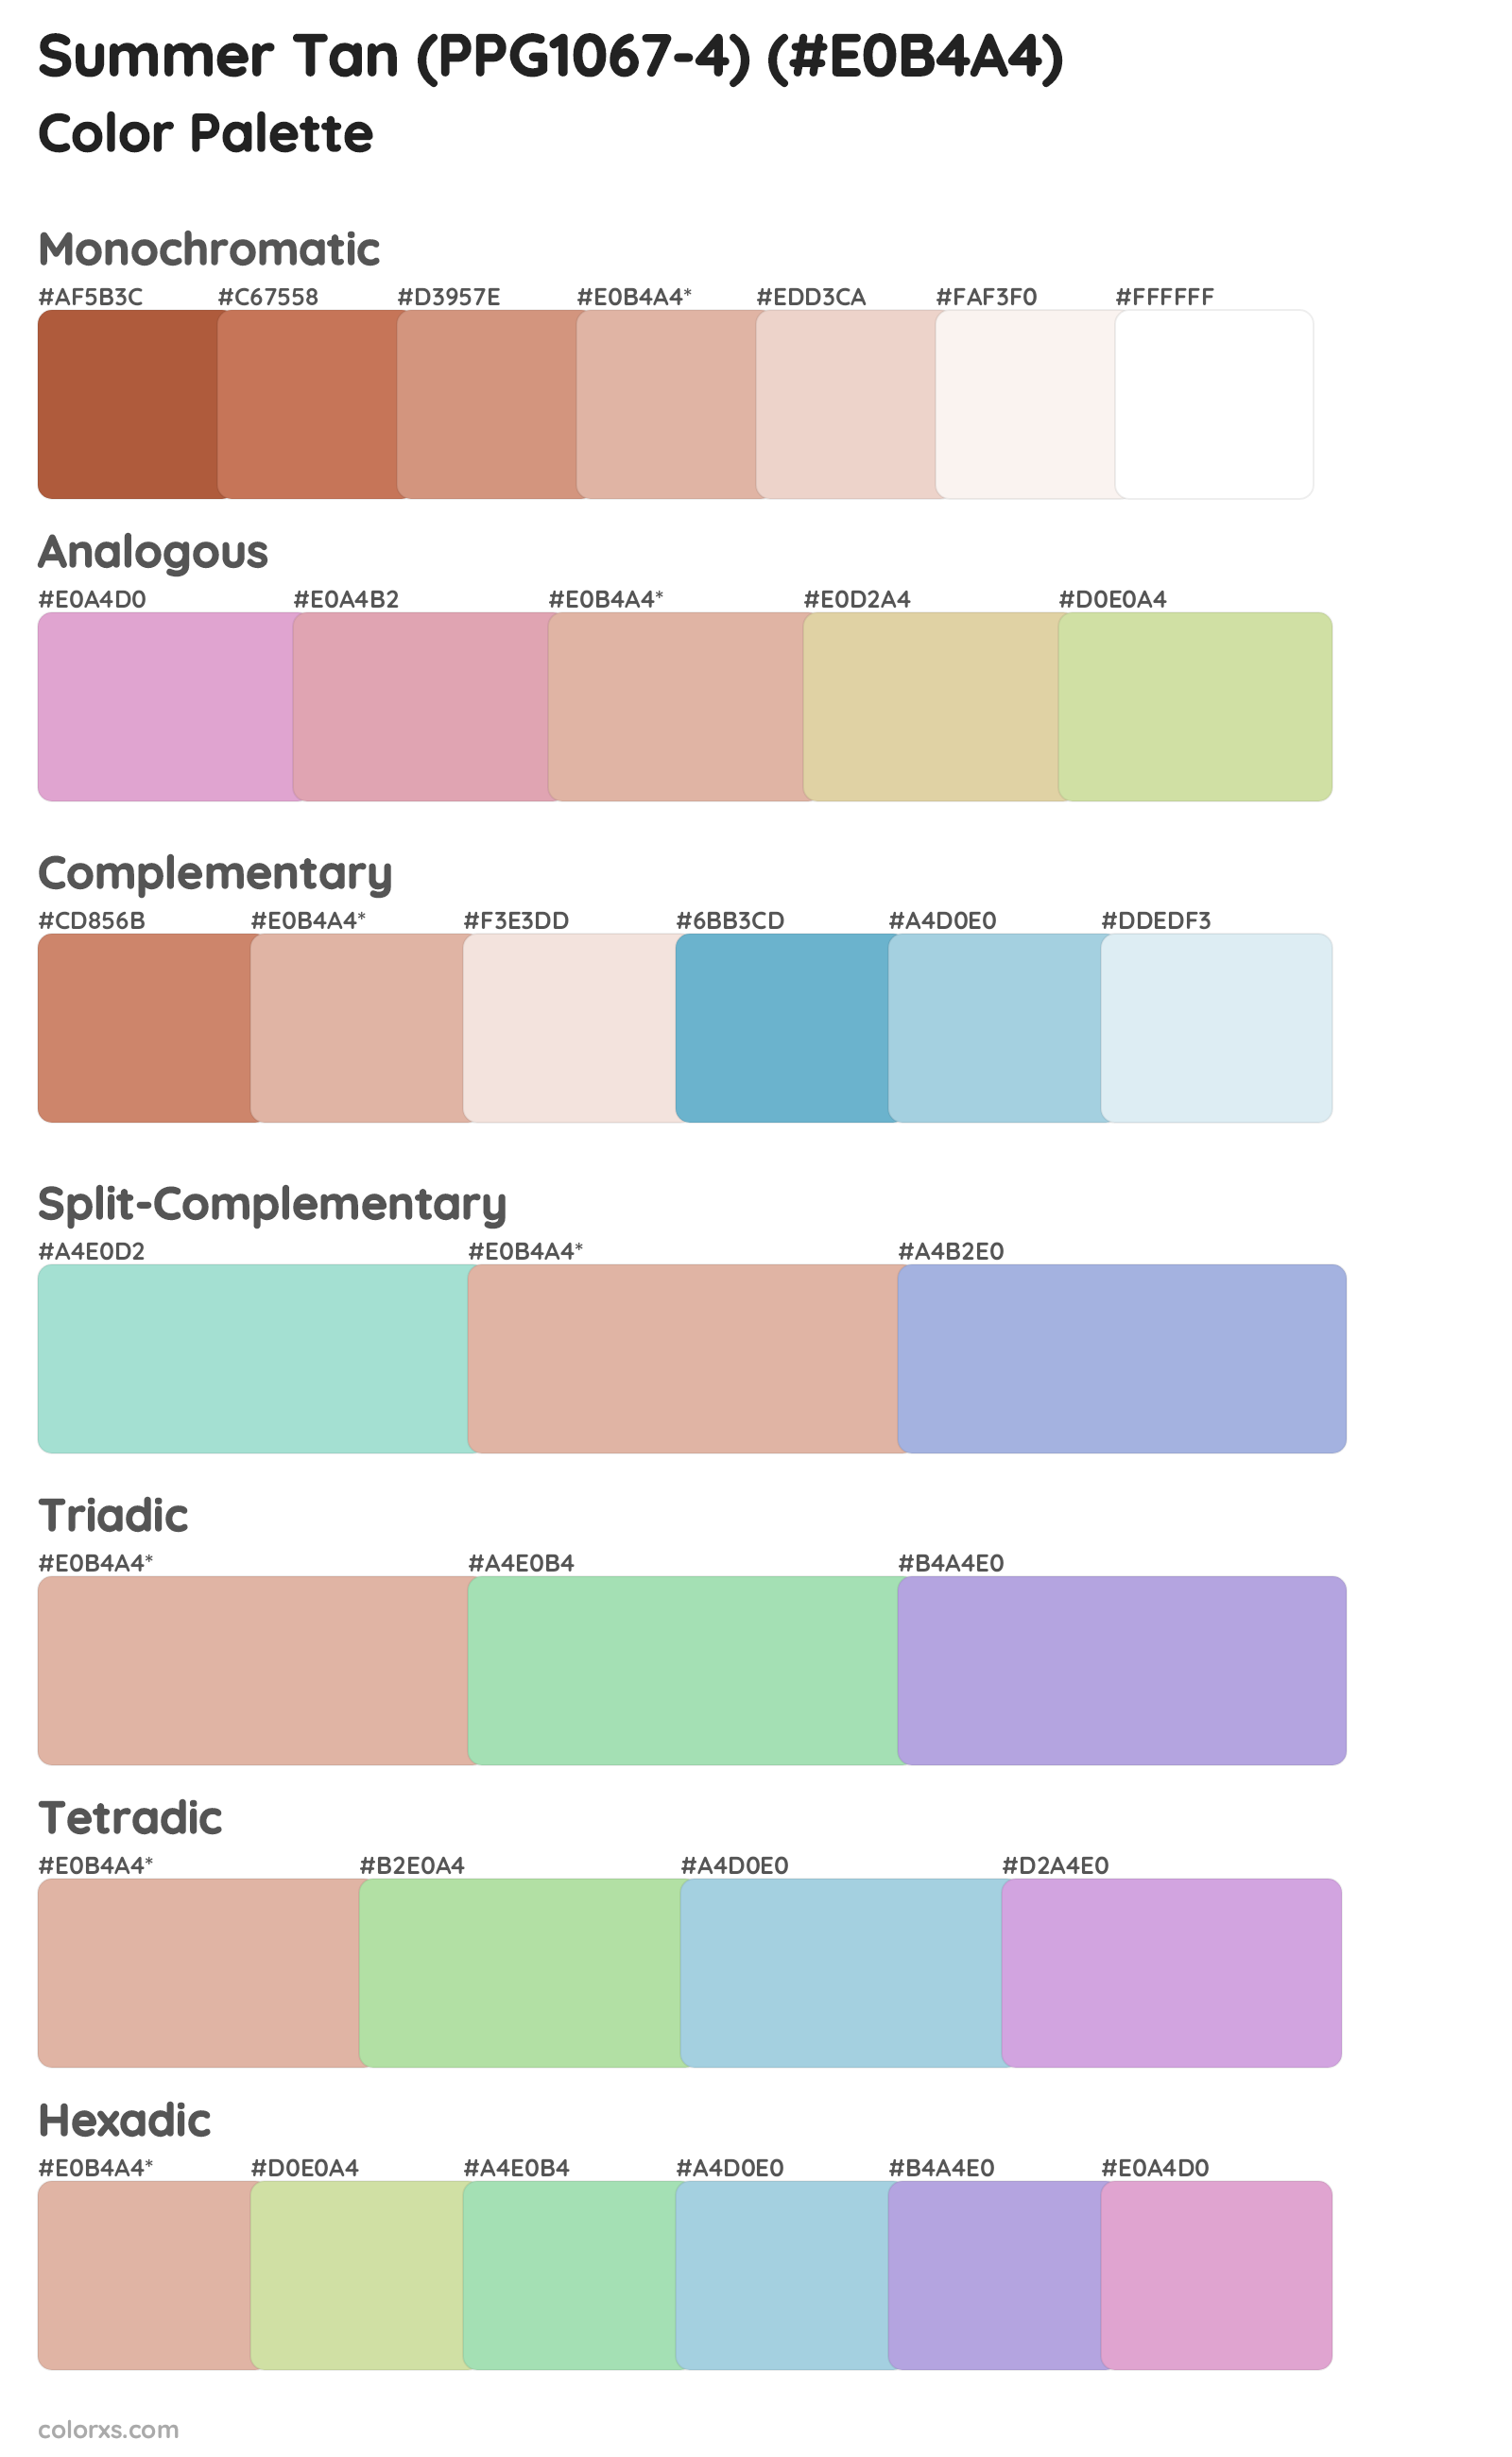 Summer Tan (PPG1067-4) Color Scheme Palettes